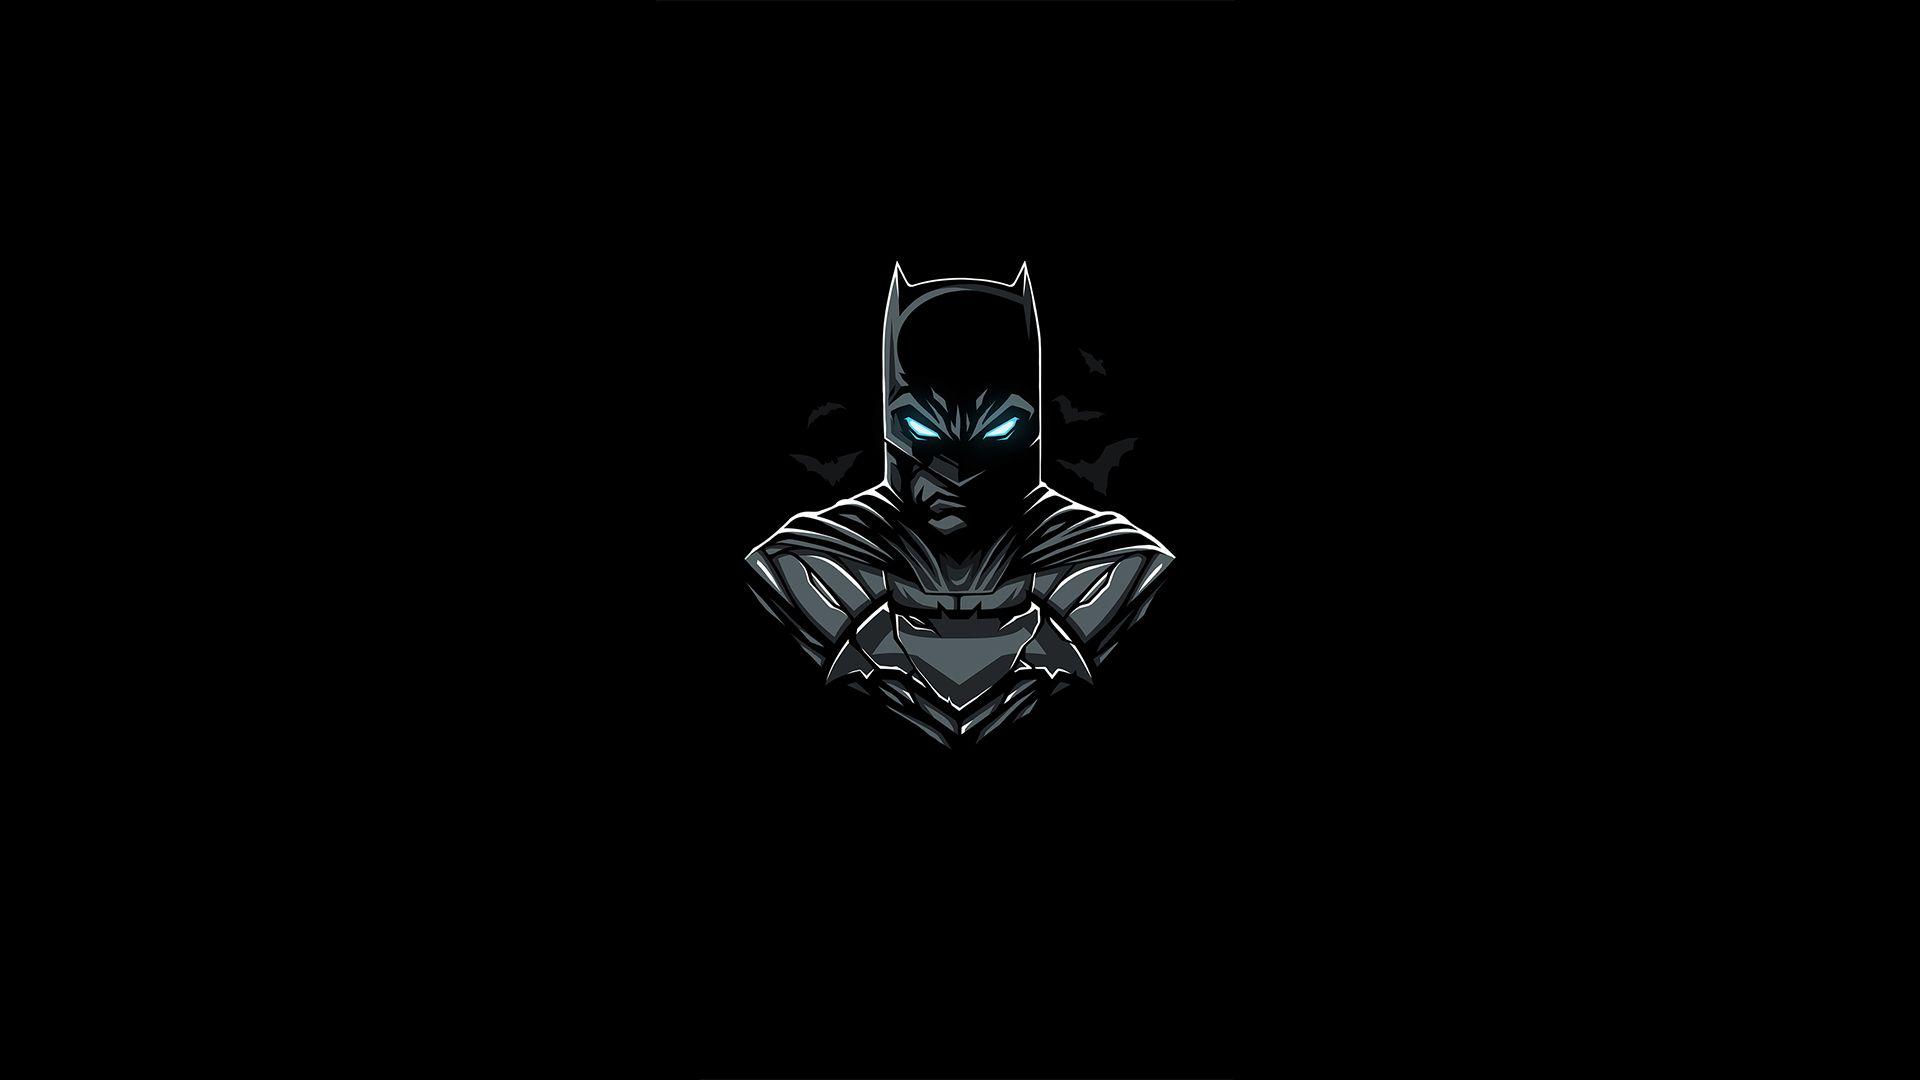 1920x1080 Batman Amoled, Siêu anh hùng HD, Hình nền 4k, Hình ảnh, Bối cảnh